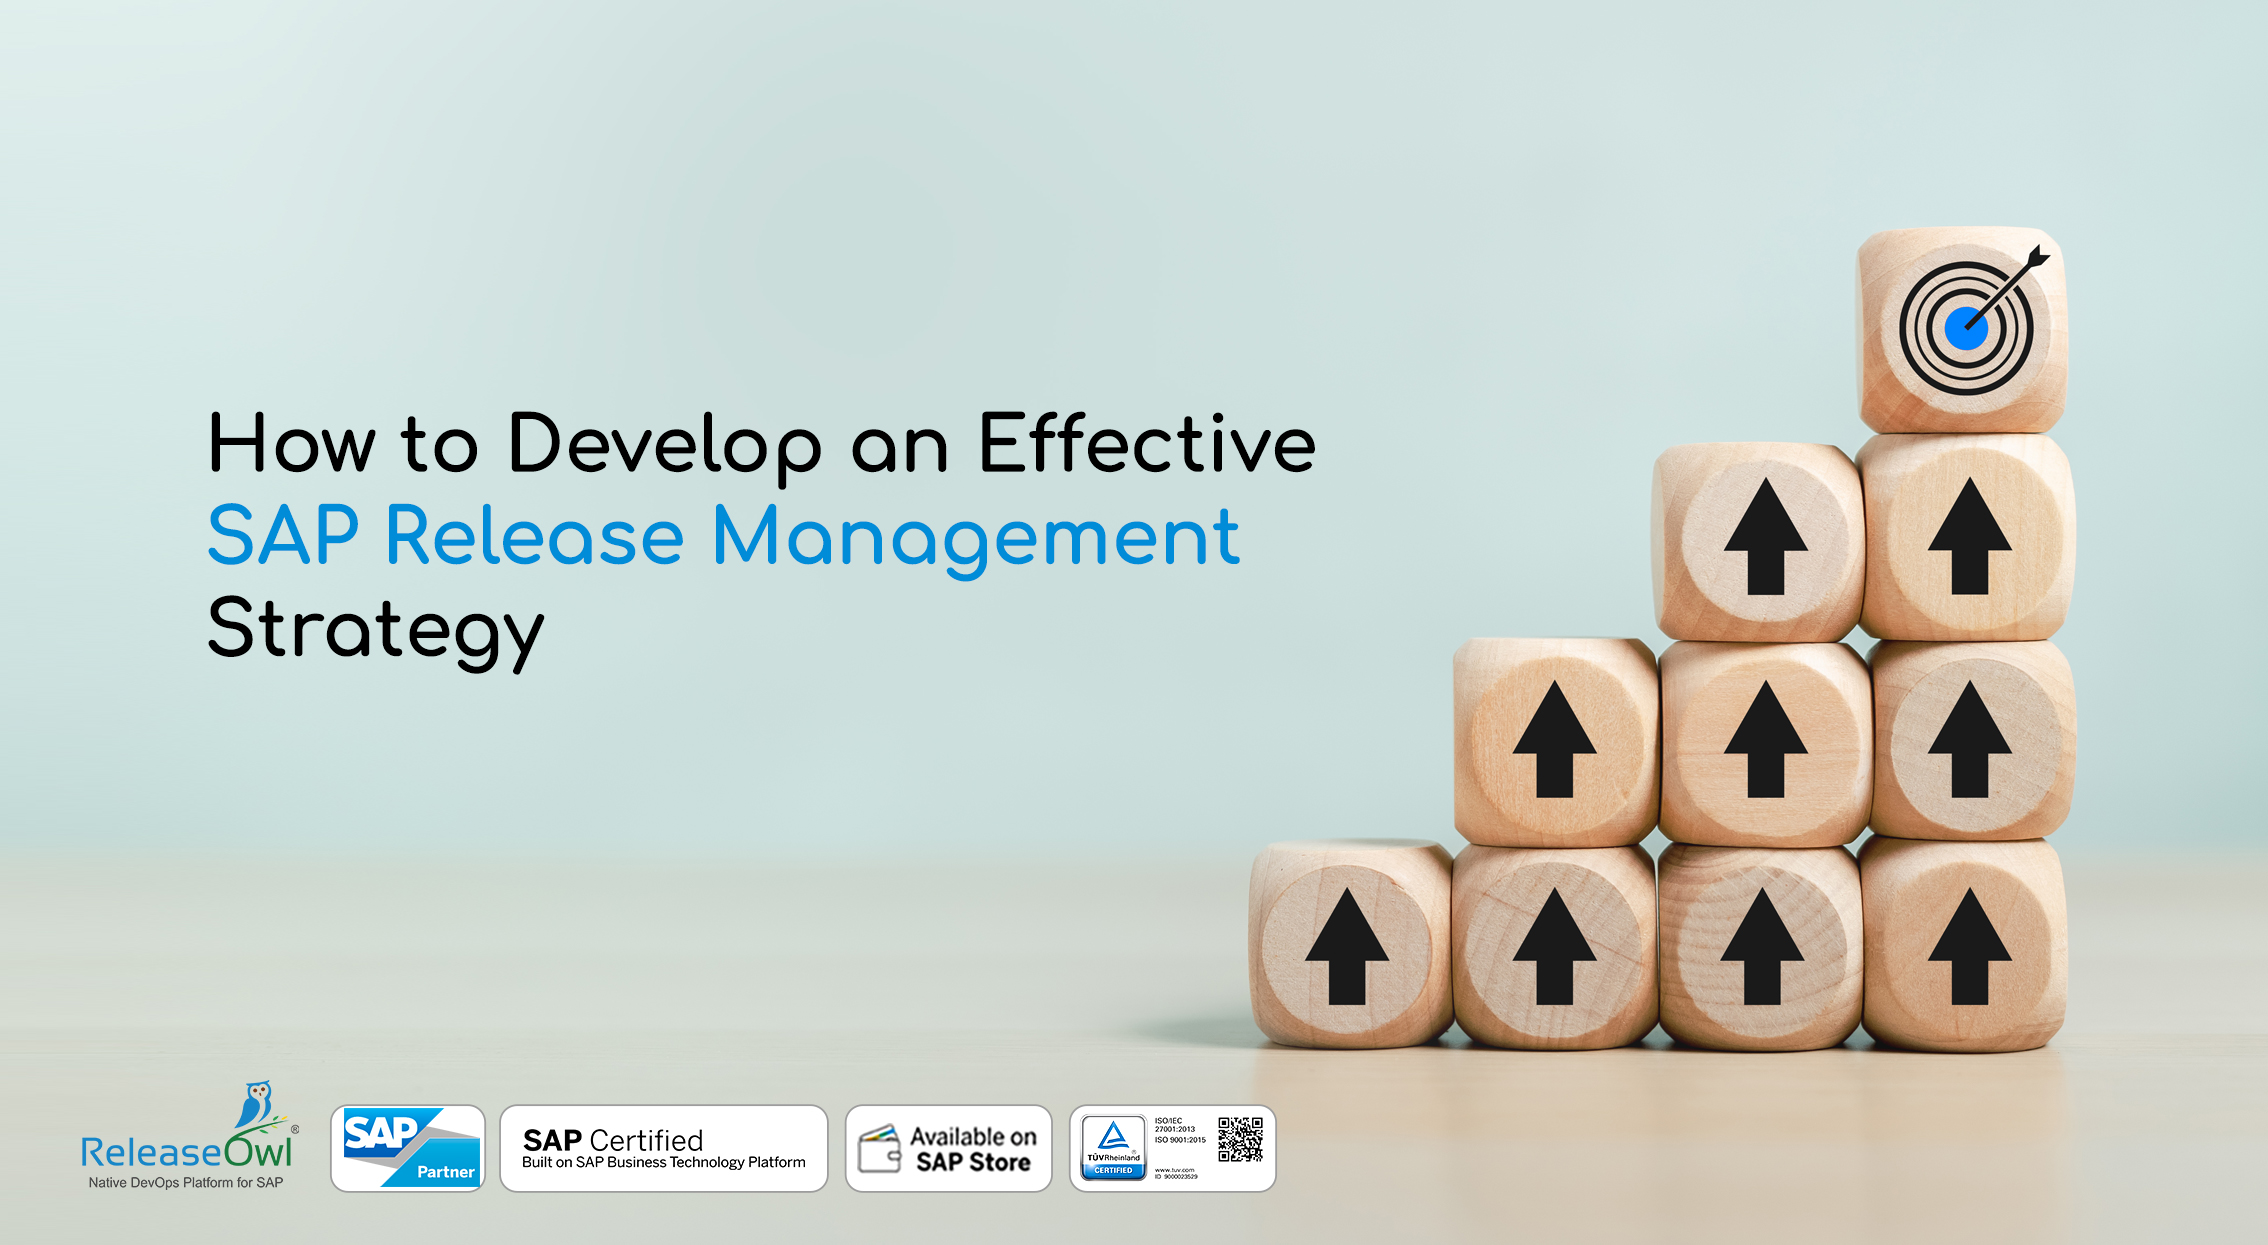 SAP Release Management